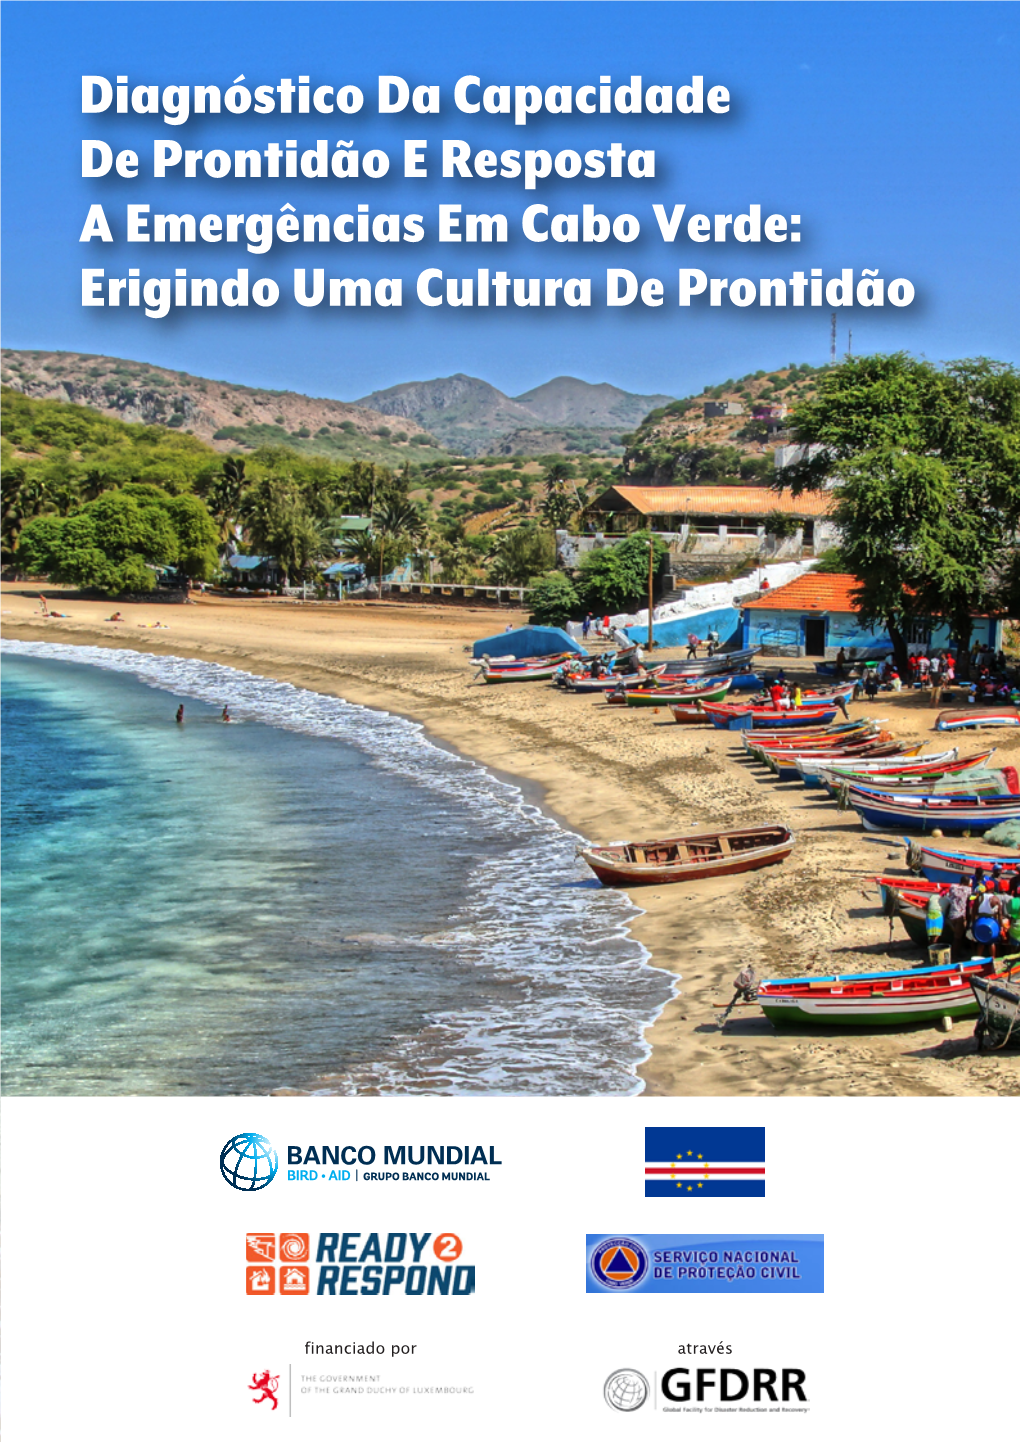 Diagnóstico Da Capacidade De Prontidão E Resposta a Emergências Em Cabo Verde: Erigindo Uma Cultura De Prontidão